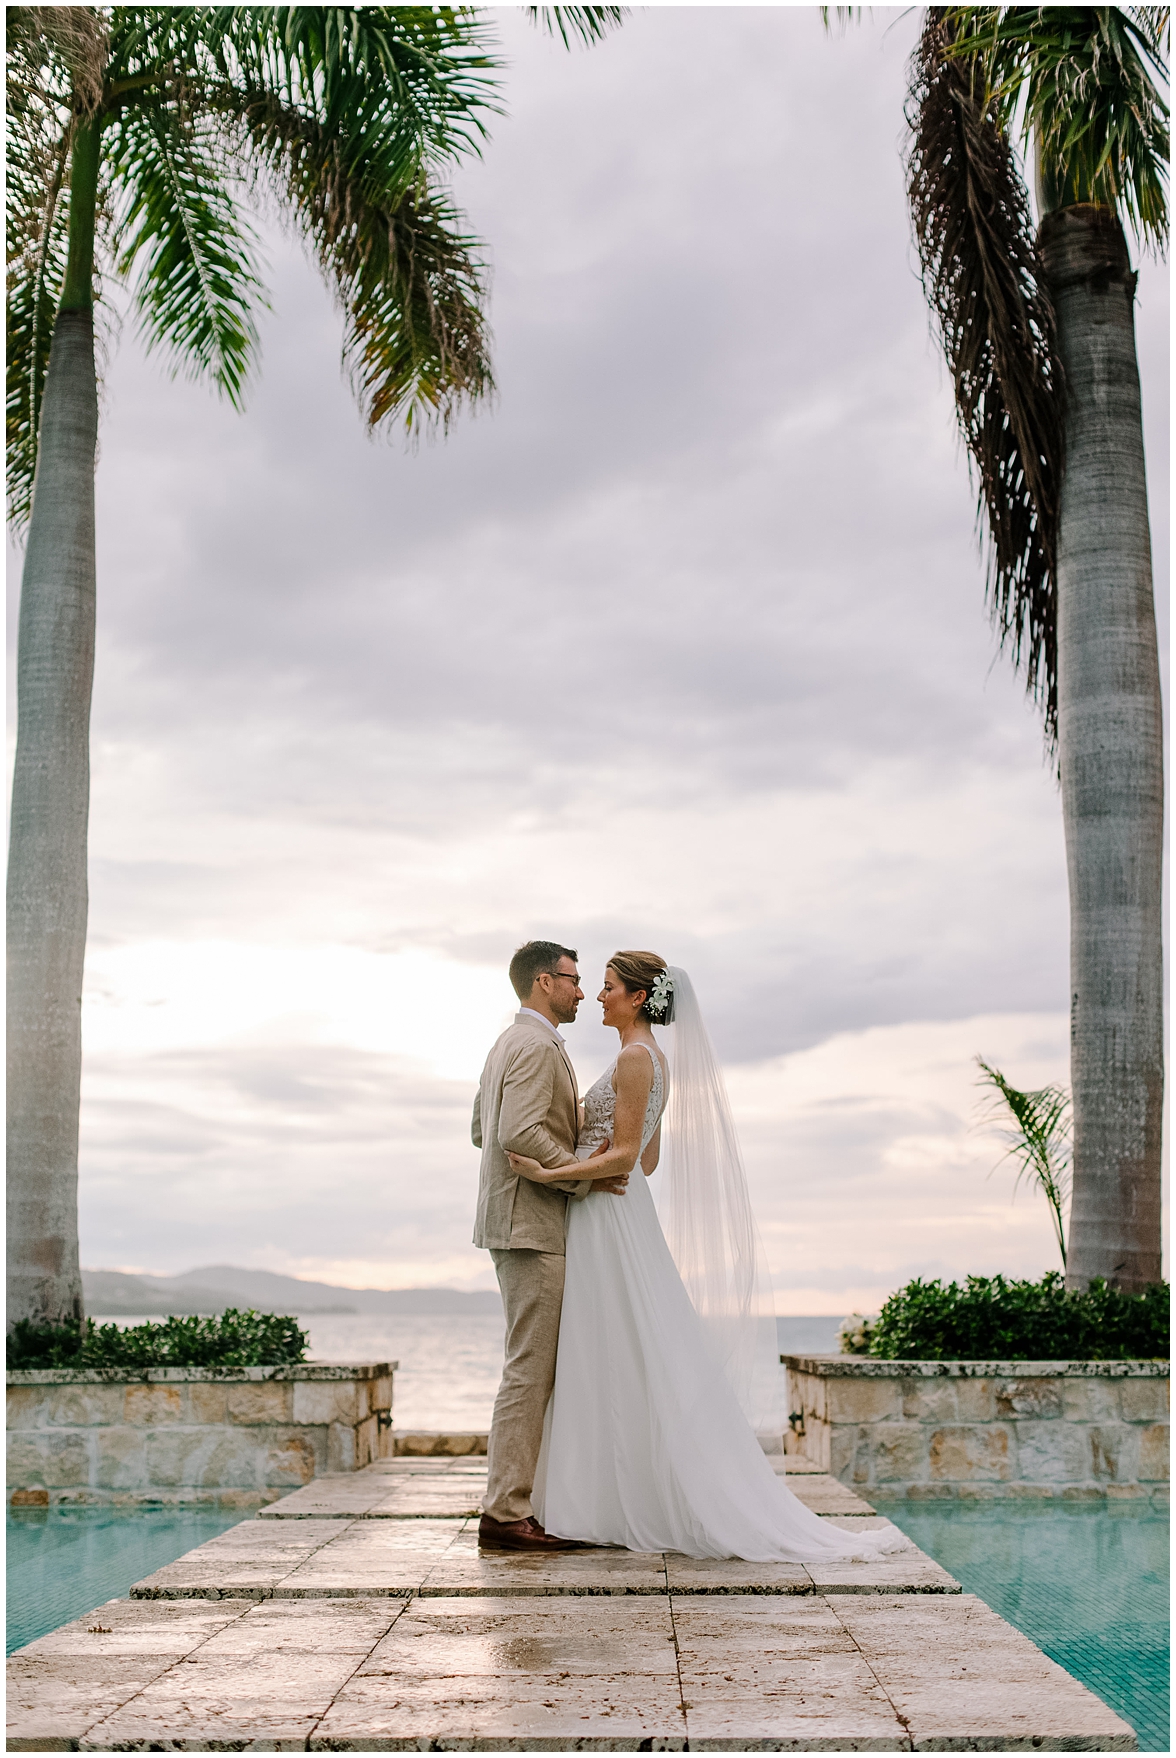 Round Hill Hotel and Villas Wedding, Jamaica Wedding, Jamaica Wedding Photographer, Nicki Metcalf Photography